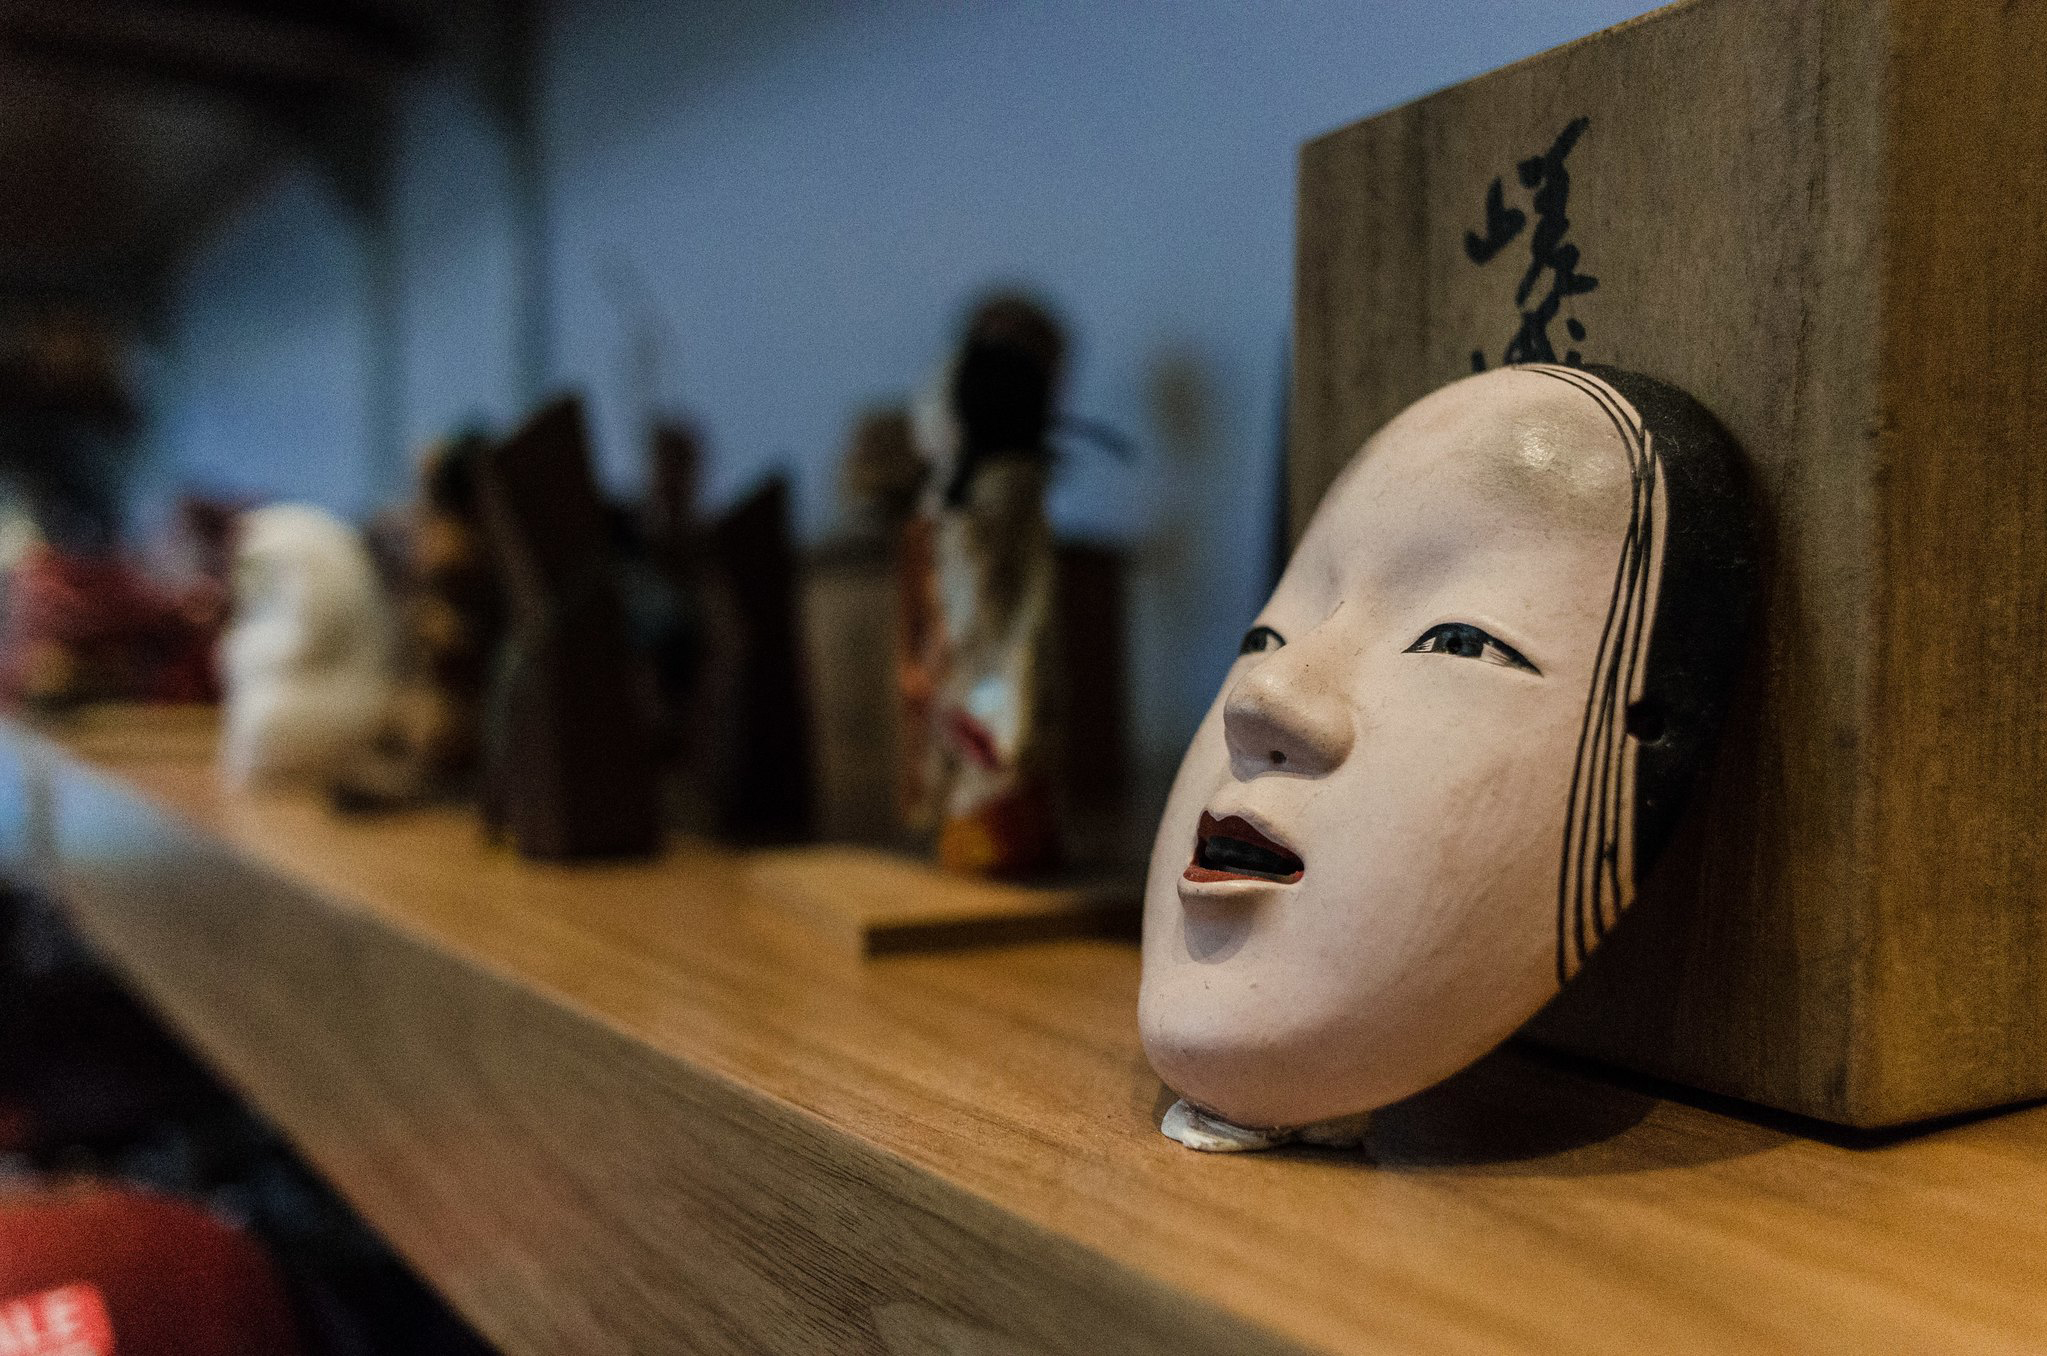 A Japanese face mask on a shelf